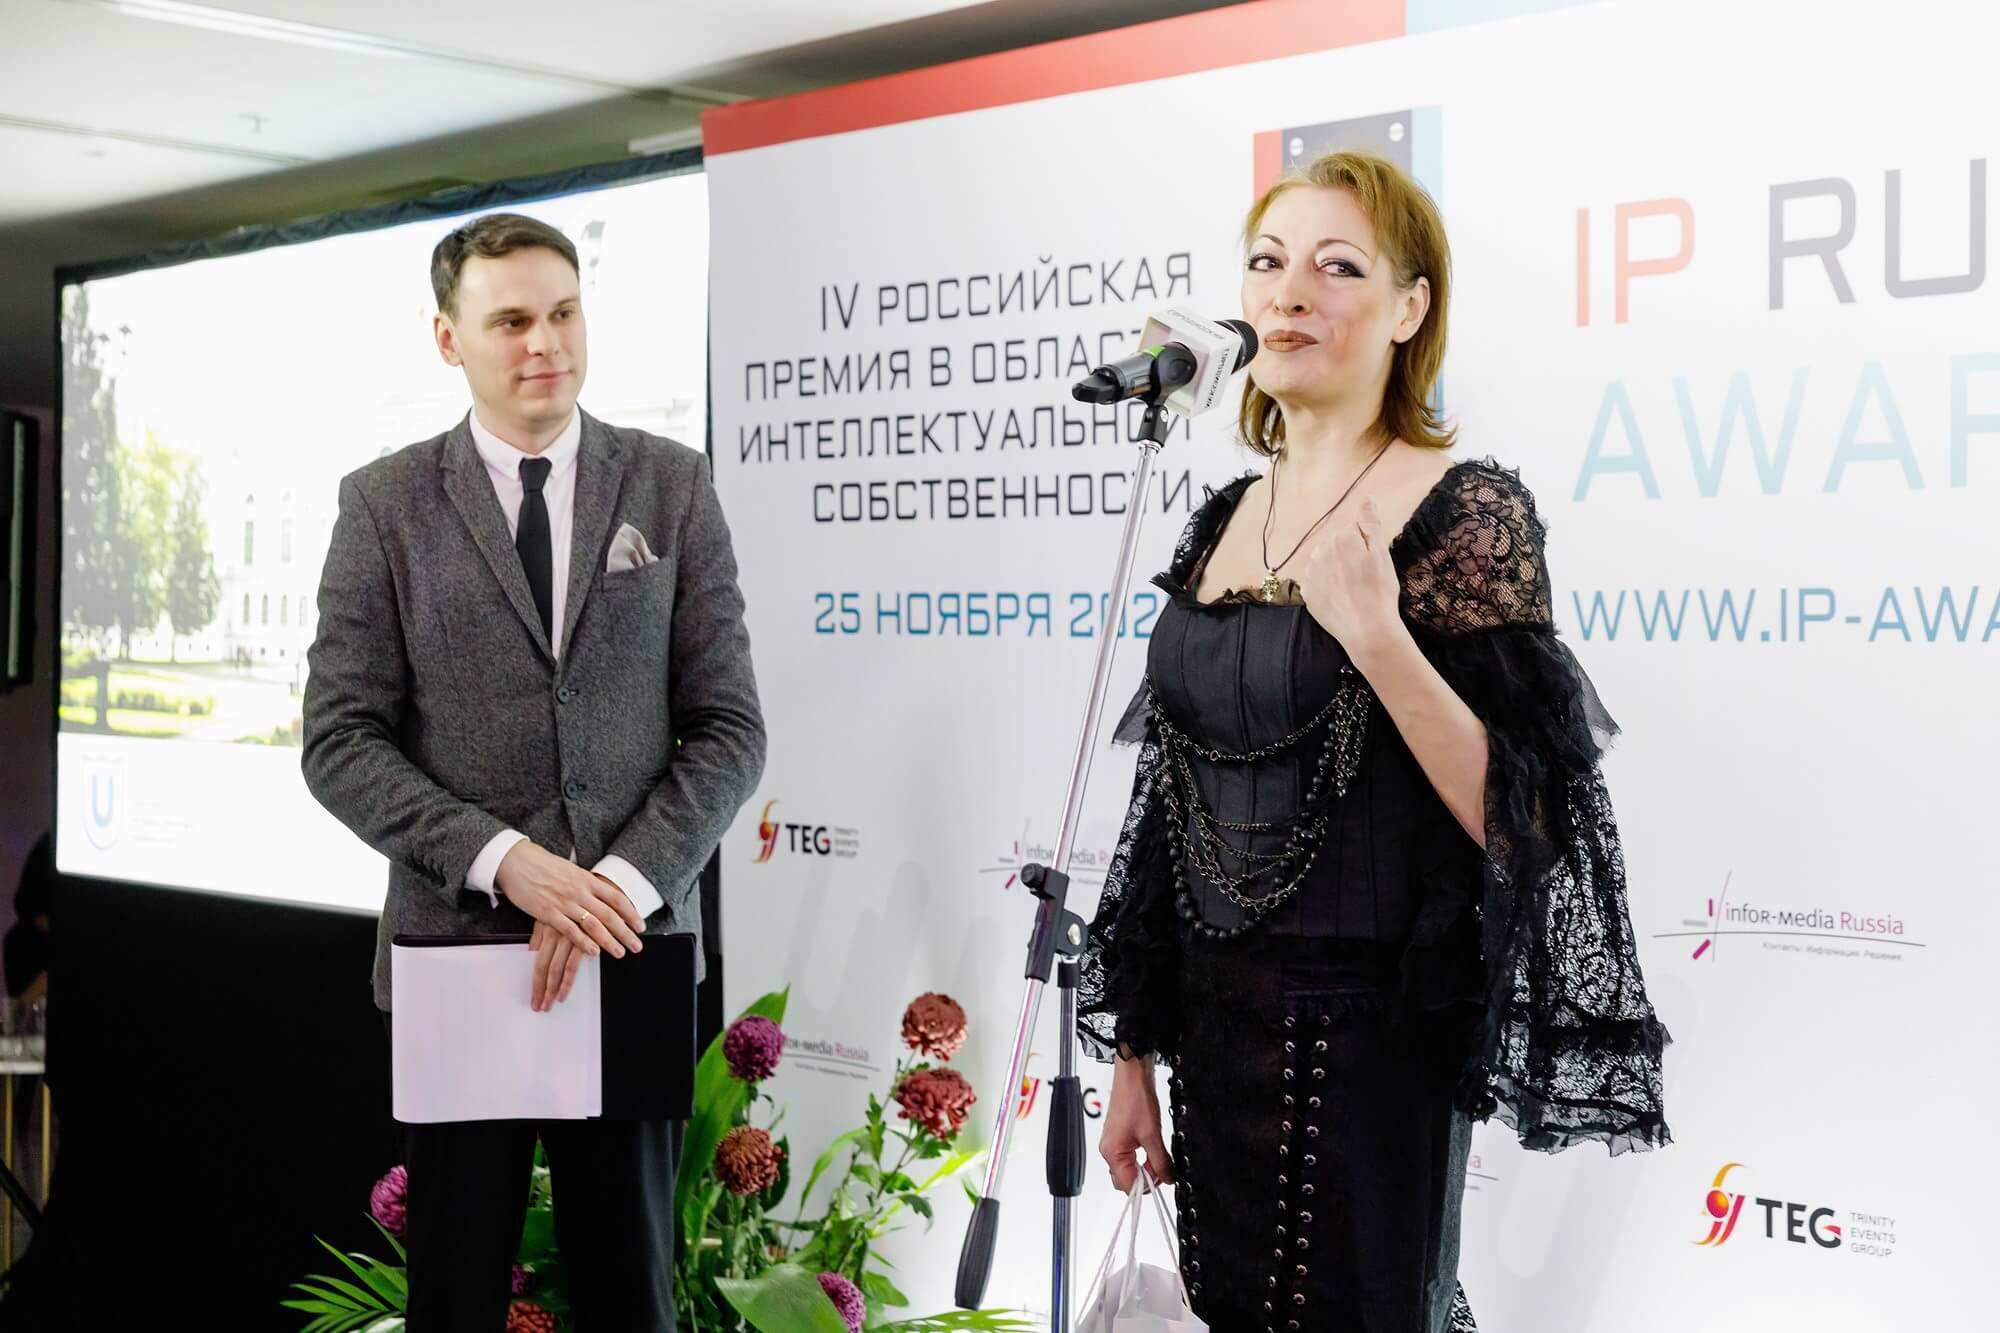 Итоги IV Российской Премии в области интеллектуальной собственности «Intellectual Property Russia Awards 2022»